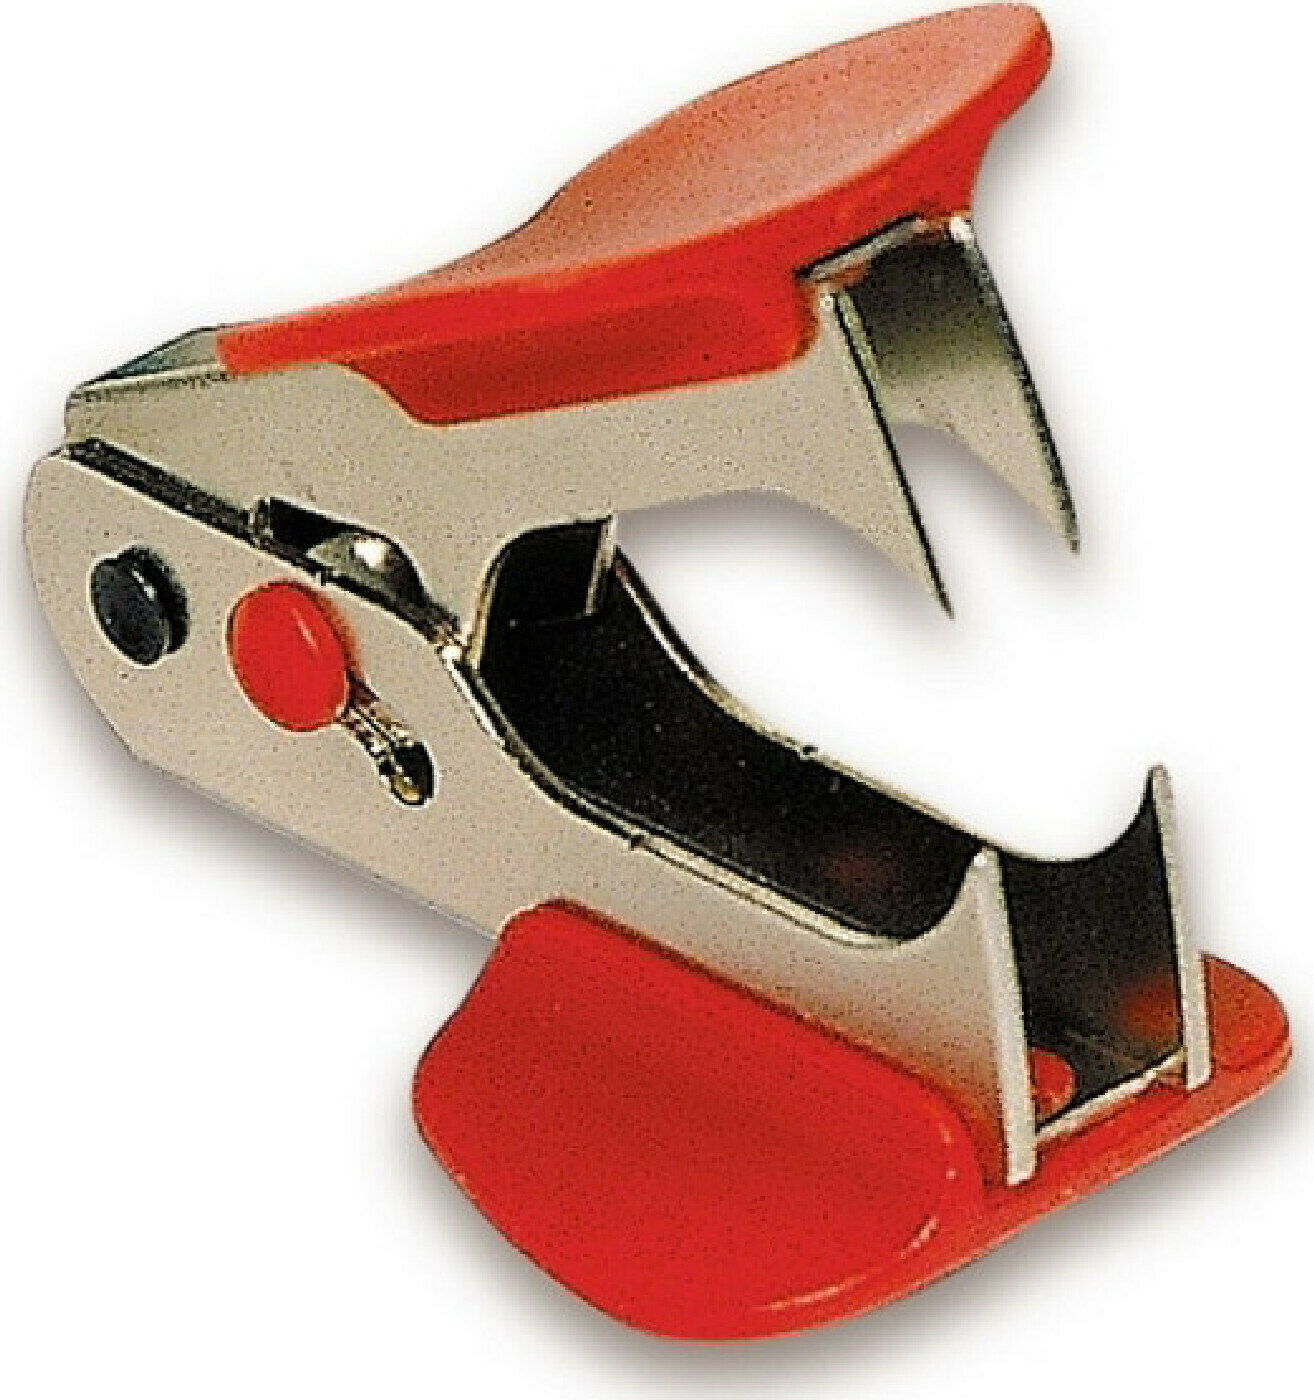 Антистеплер Антистеплер SAX 700 для скоб №24/6,26/6, (красный) 2 штуки в упаковке